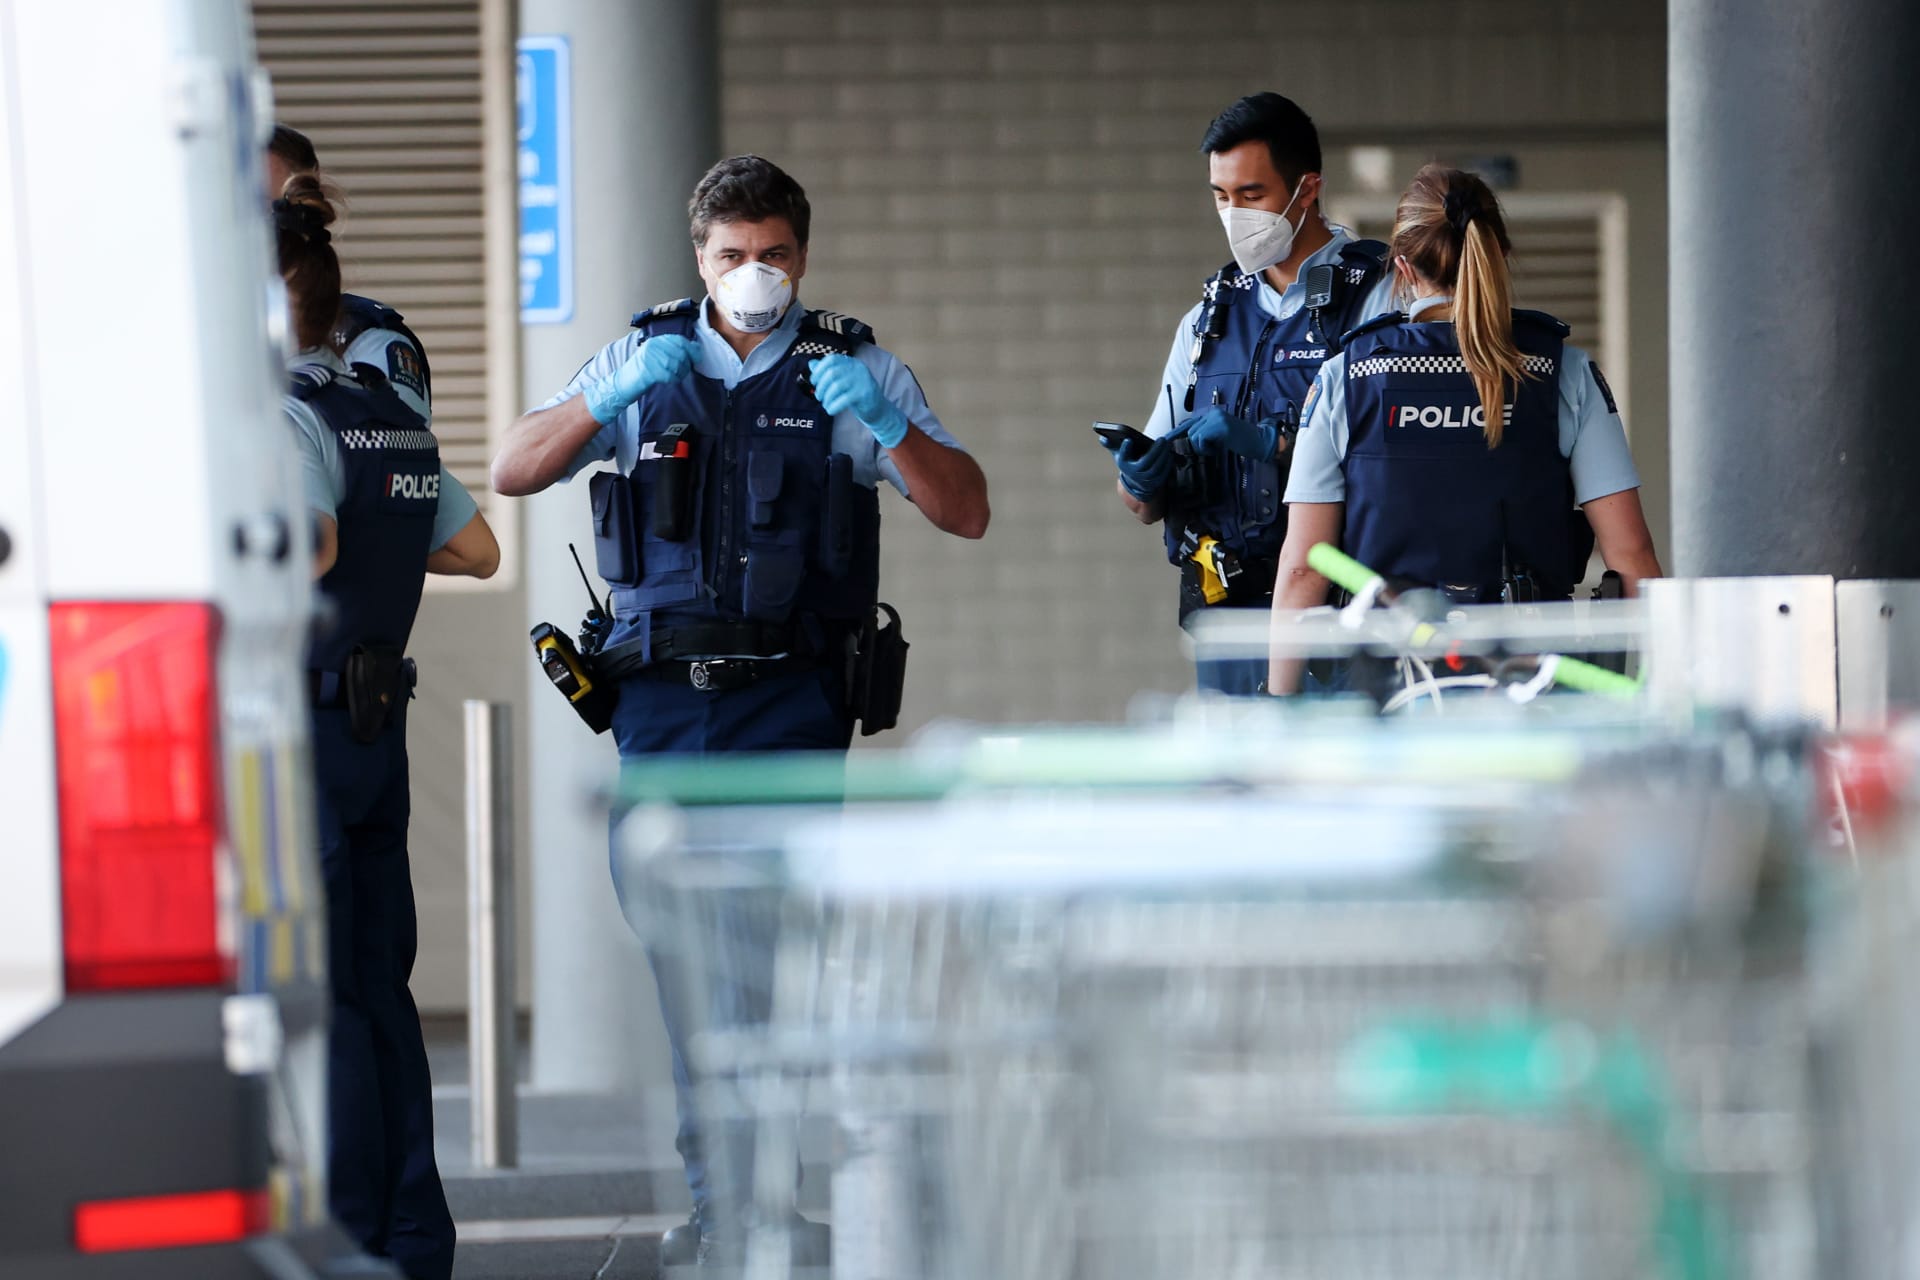 Útok v nákupním centru na Novém Zélandu 